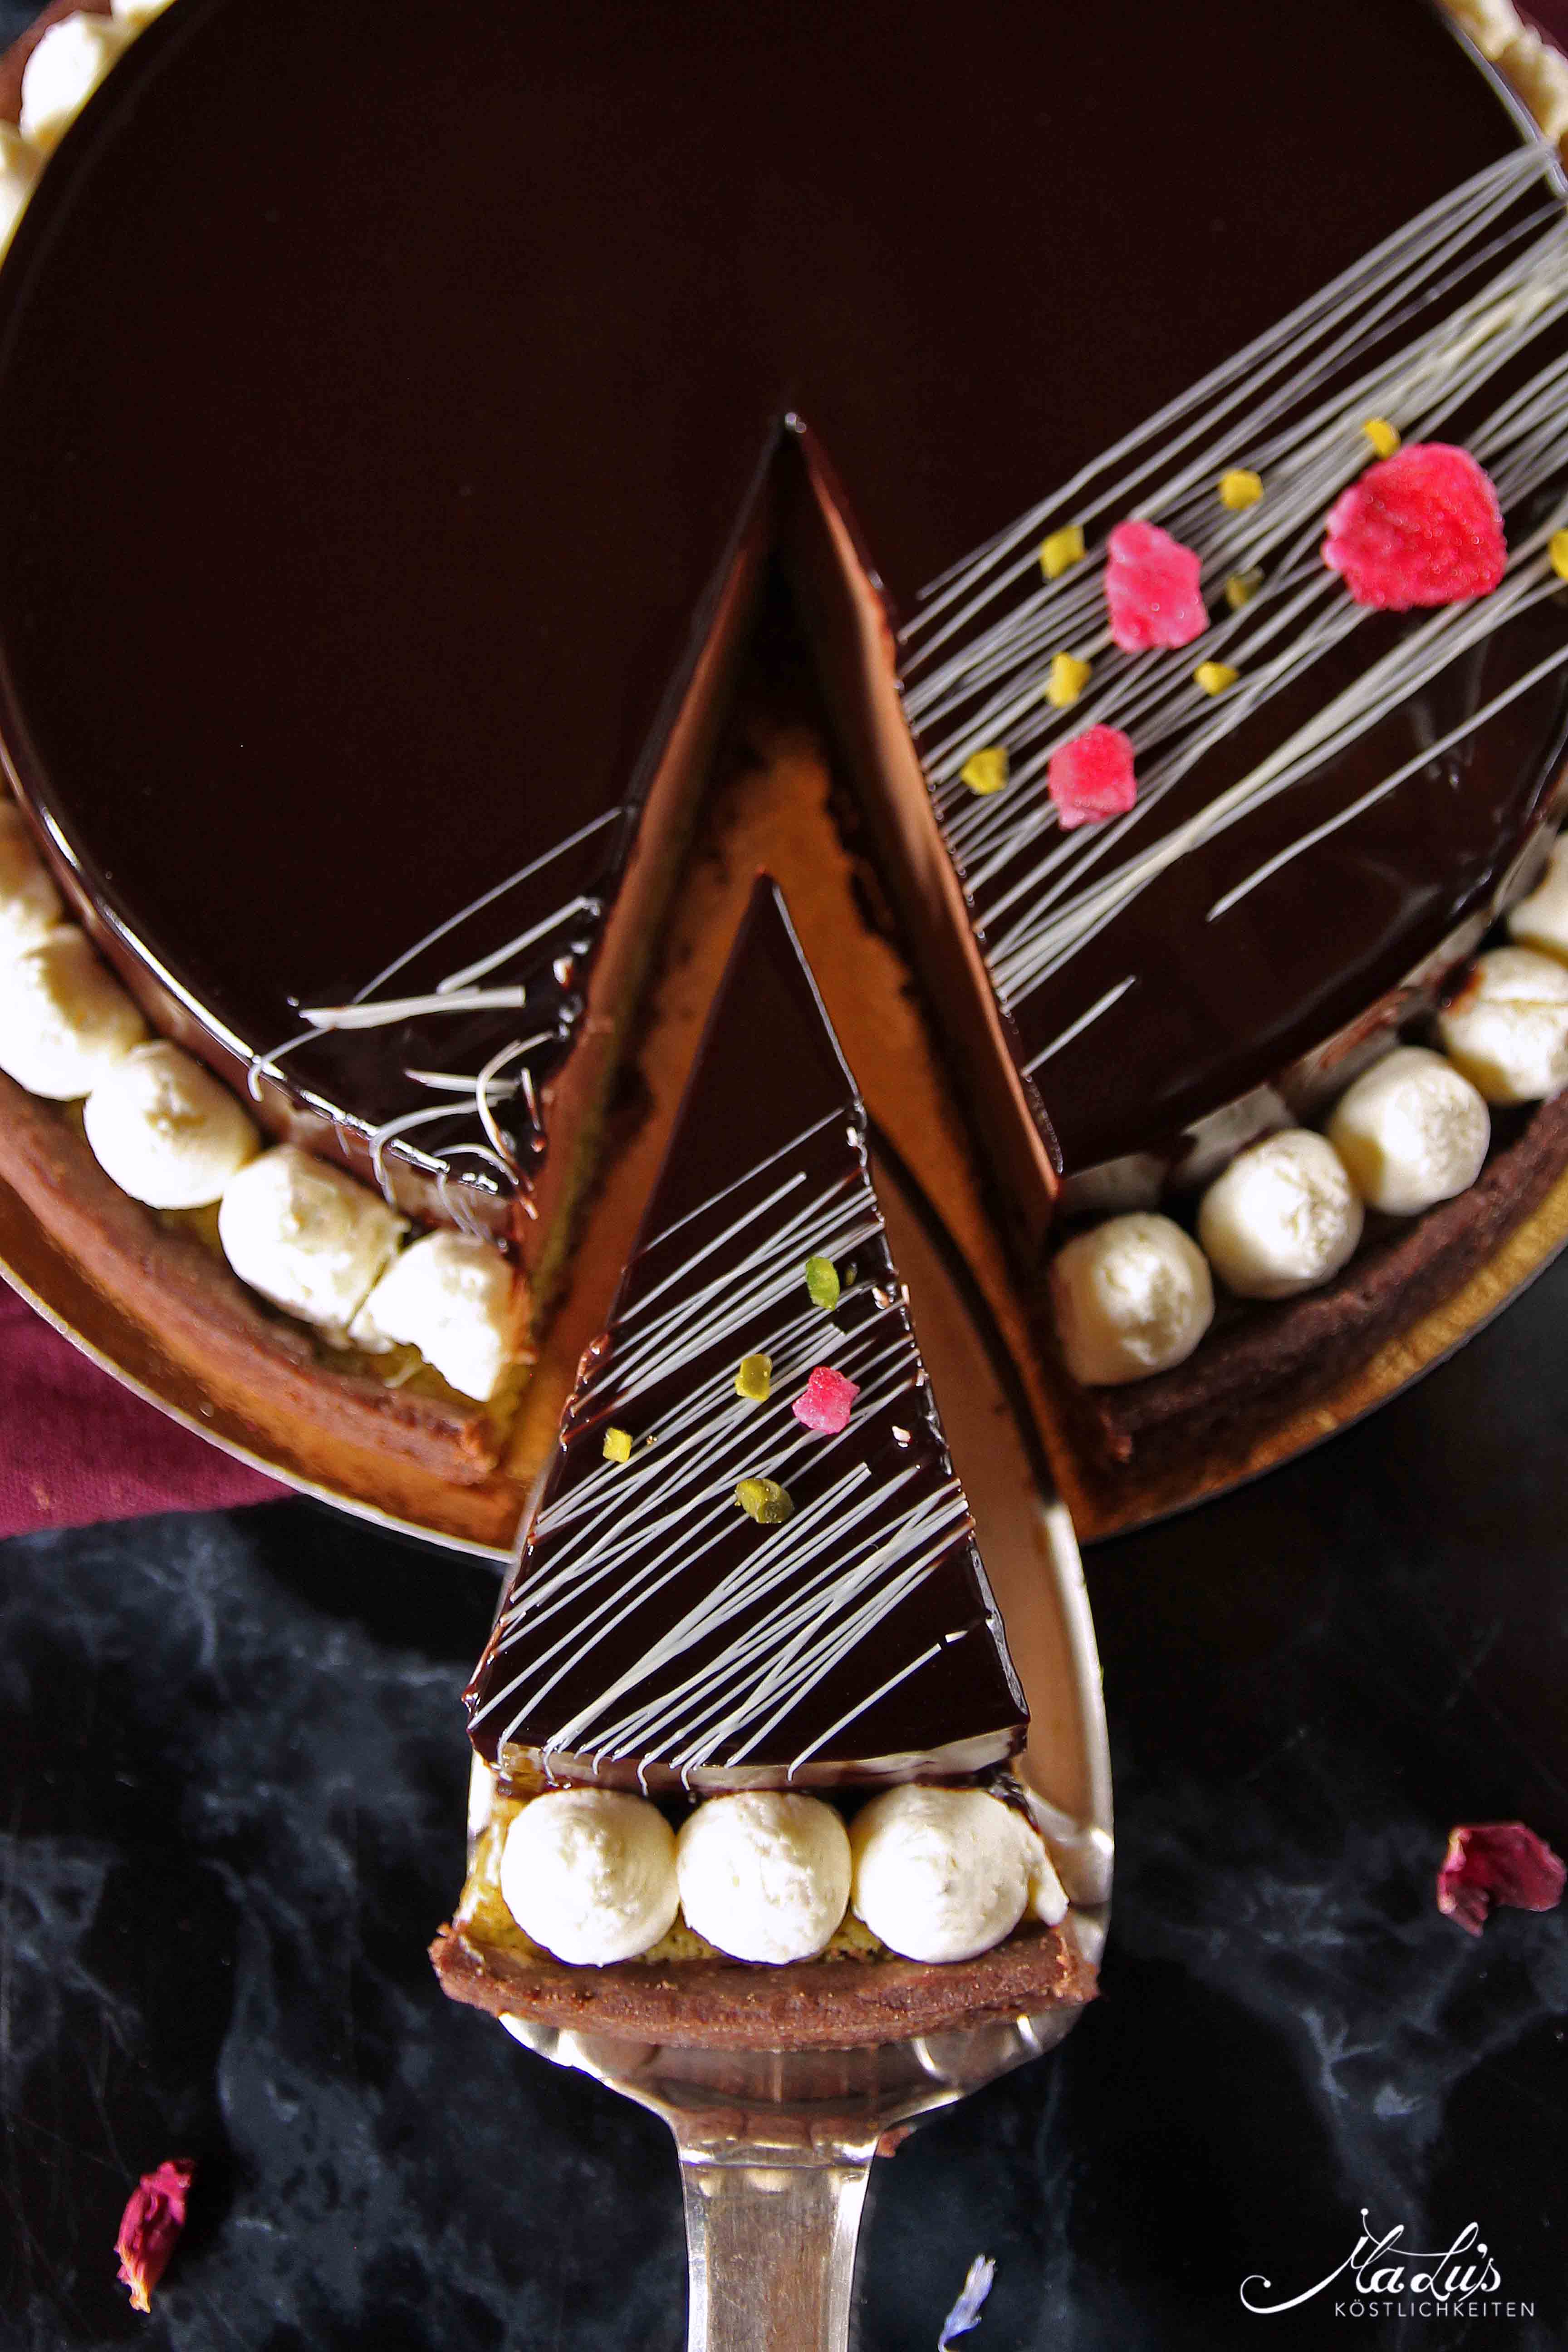 Schokoladentarte mit Pistazie & Kokos | MaLu's Koestlichkeiten